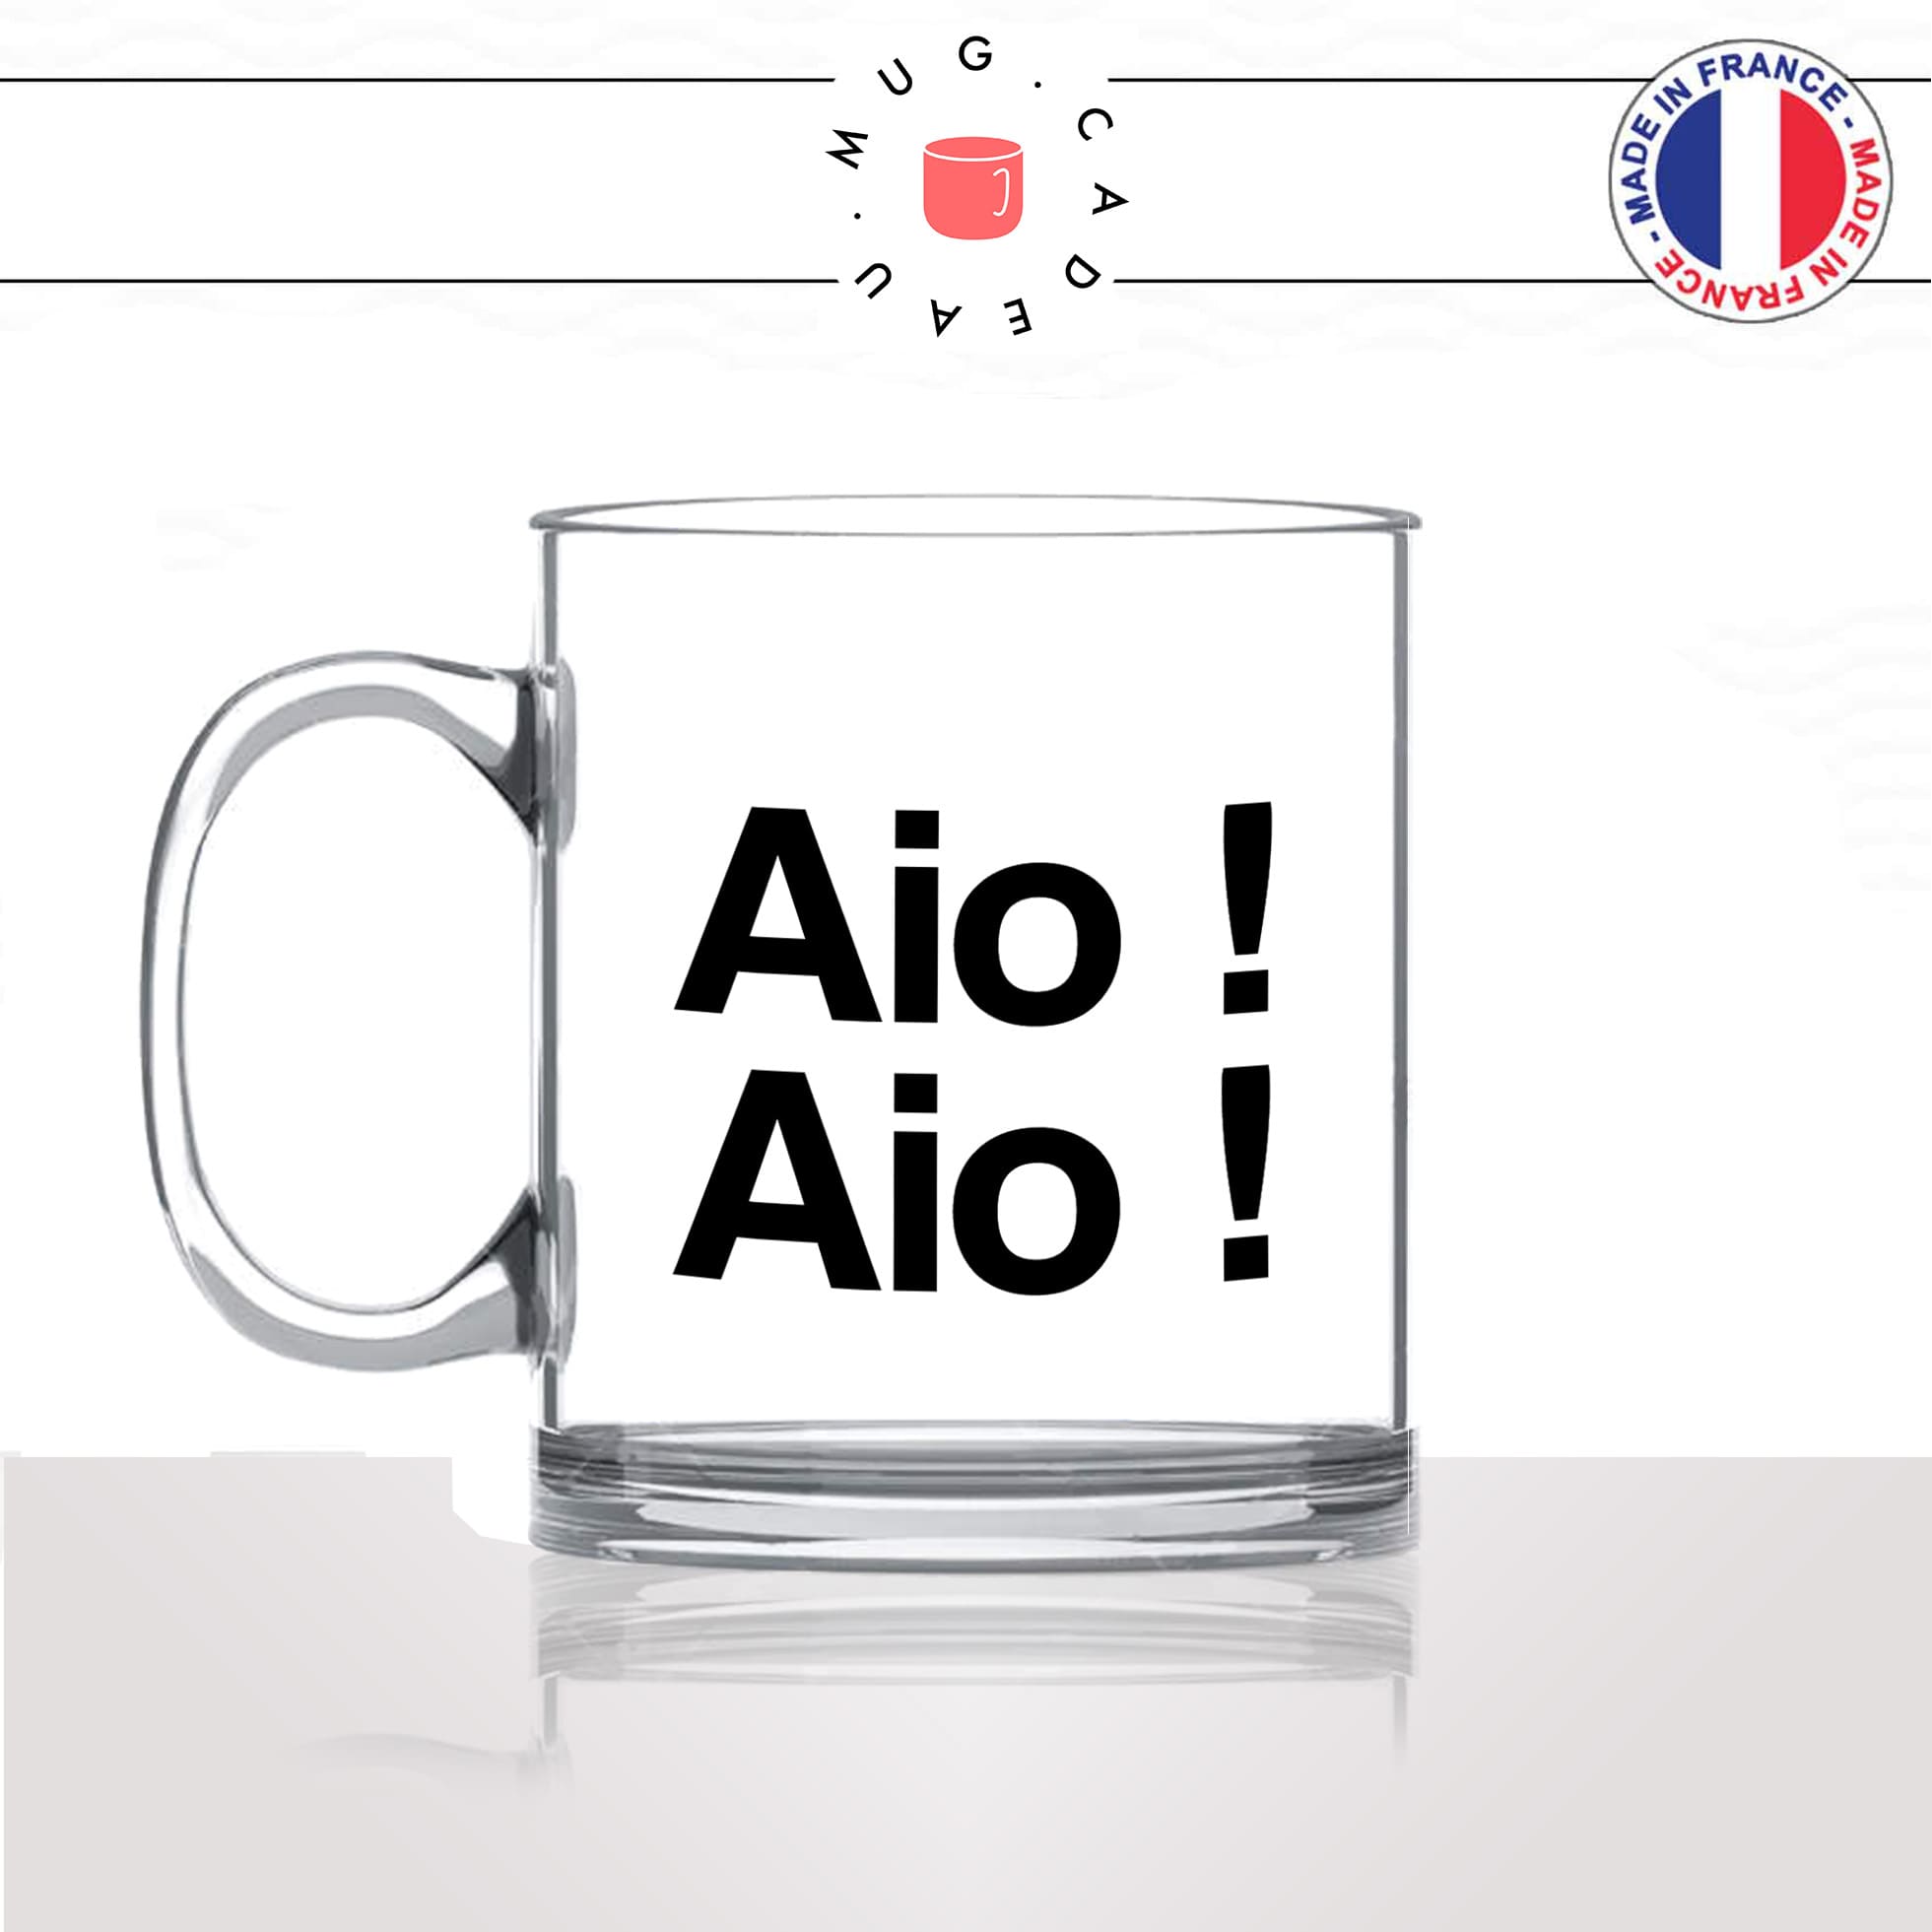 mug-tasse-en-verre-transparent-glass-aio-aio-corse-corsica-patois-langue-ile-de-beauté-france-francais-idée-cadeau-fun-cool-café-thé